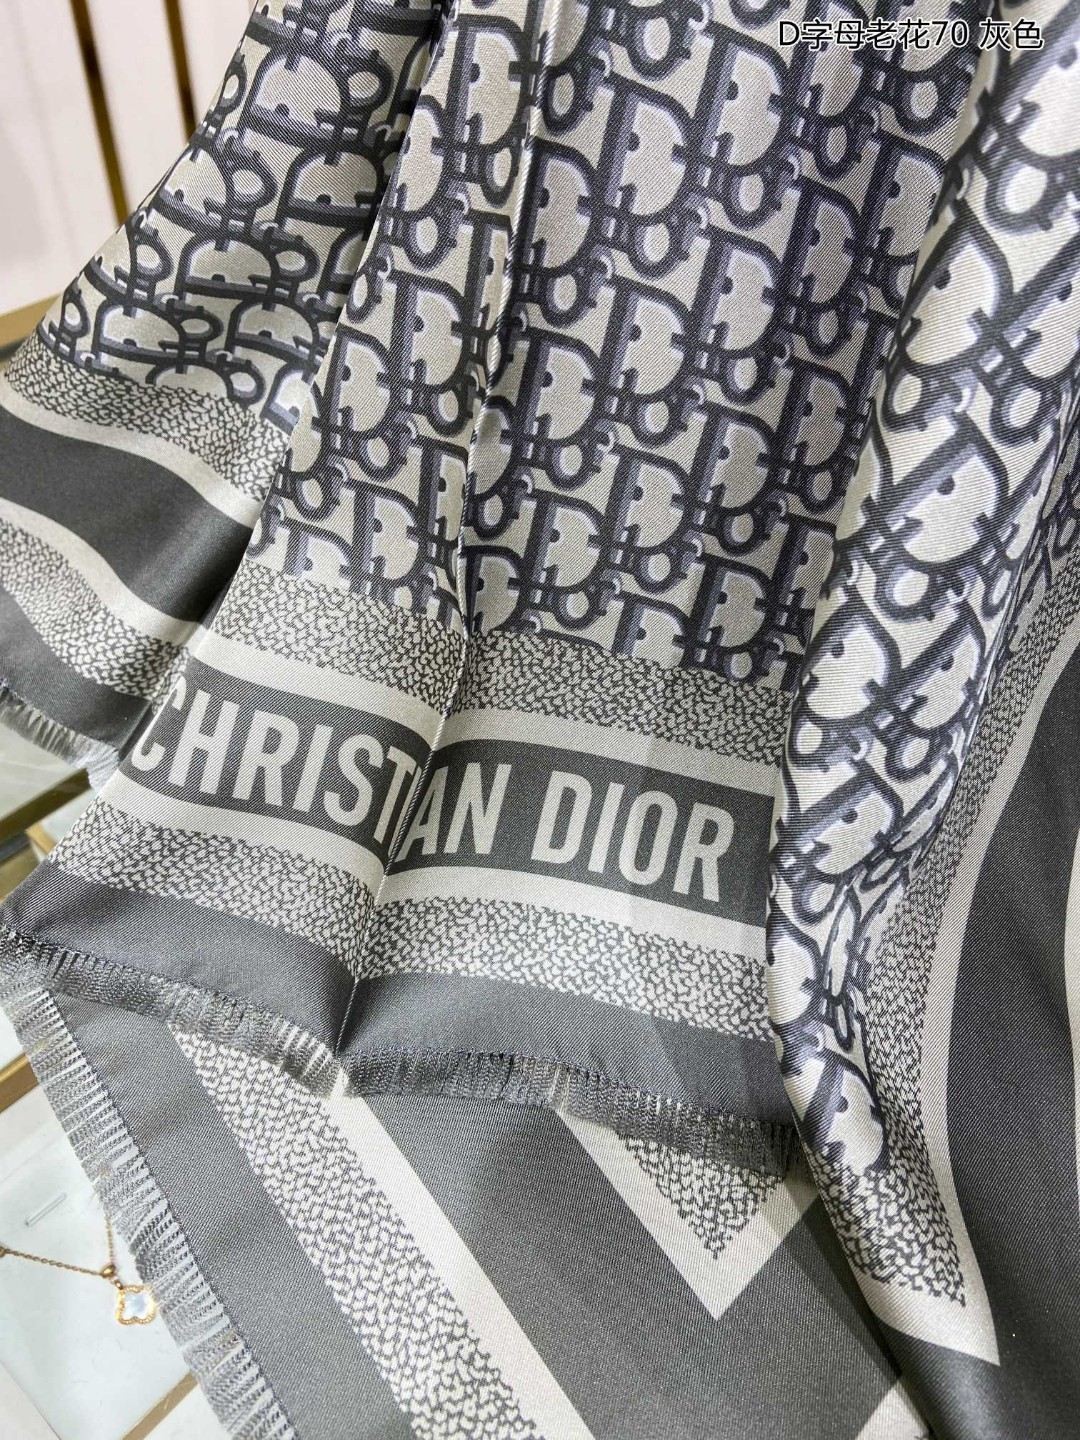 爆款原版ZG同步Dior最最新的专柜主打款D字母老花70真丝方巾度假及日常都非常好搭配的款订单私流一看到